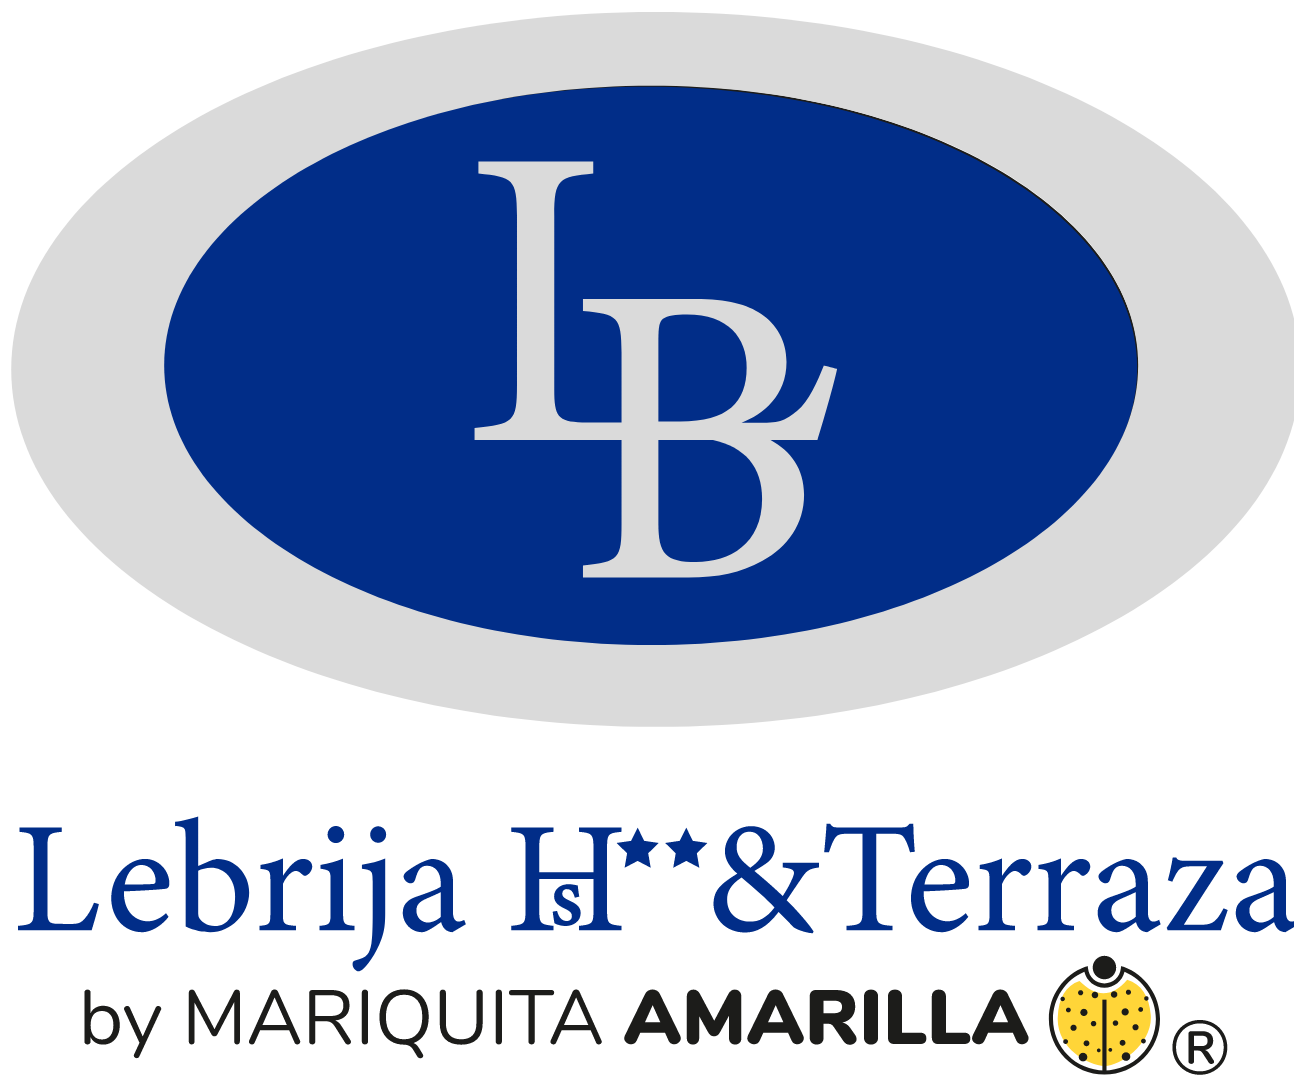 LB Lebrija Hotel